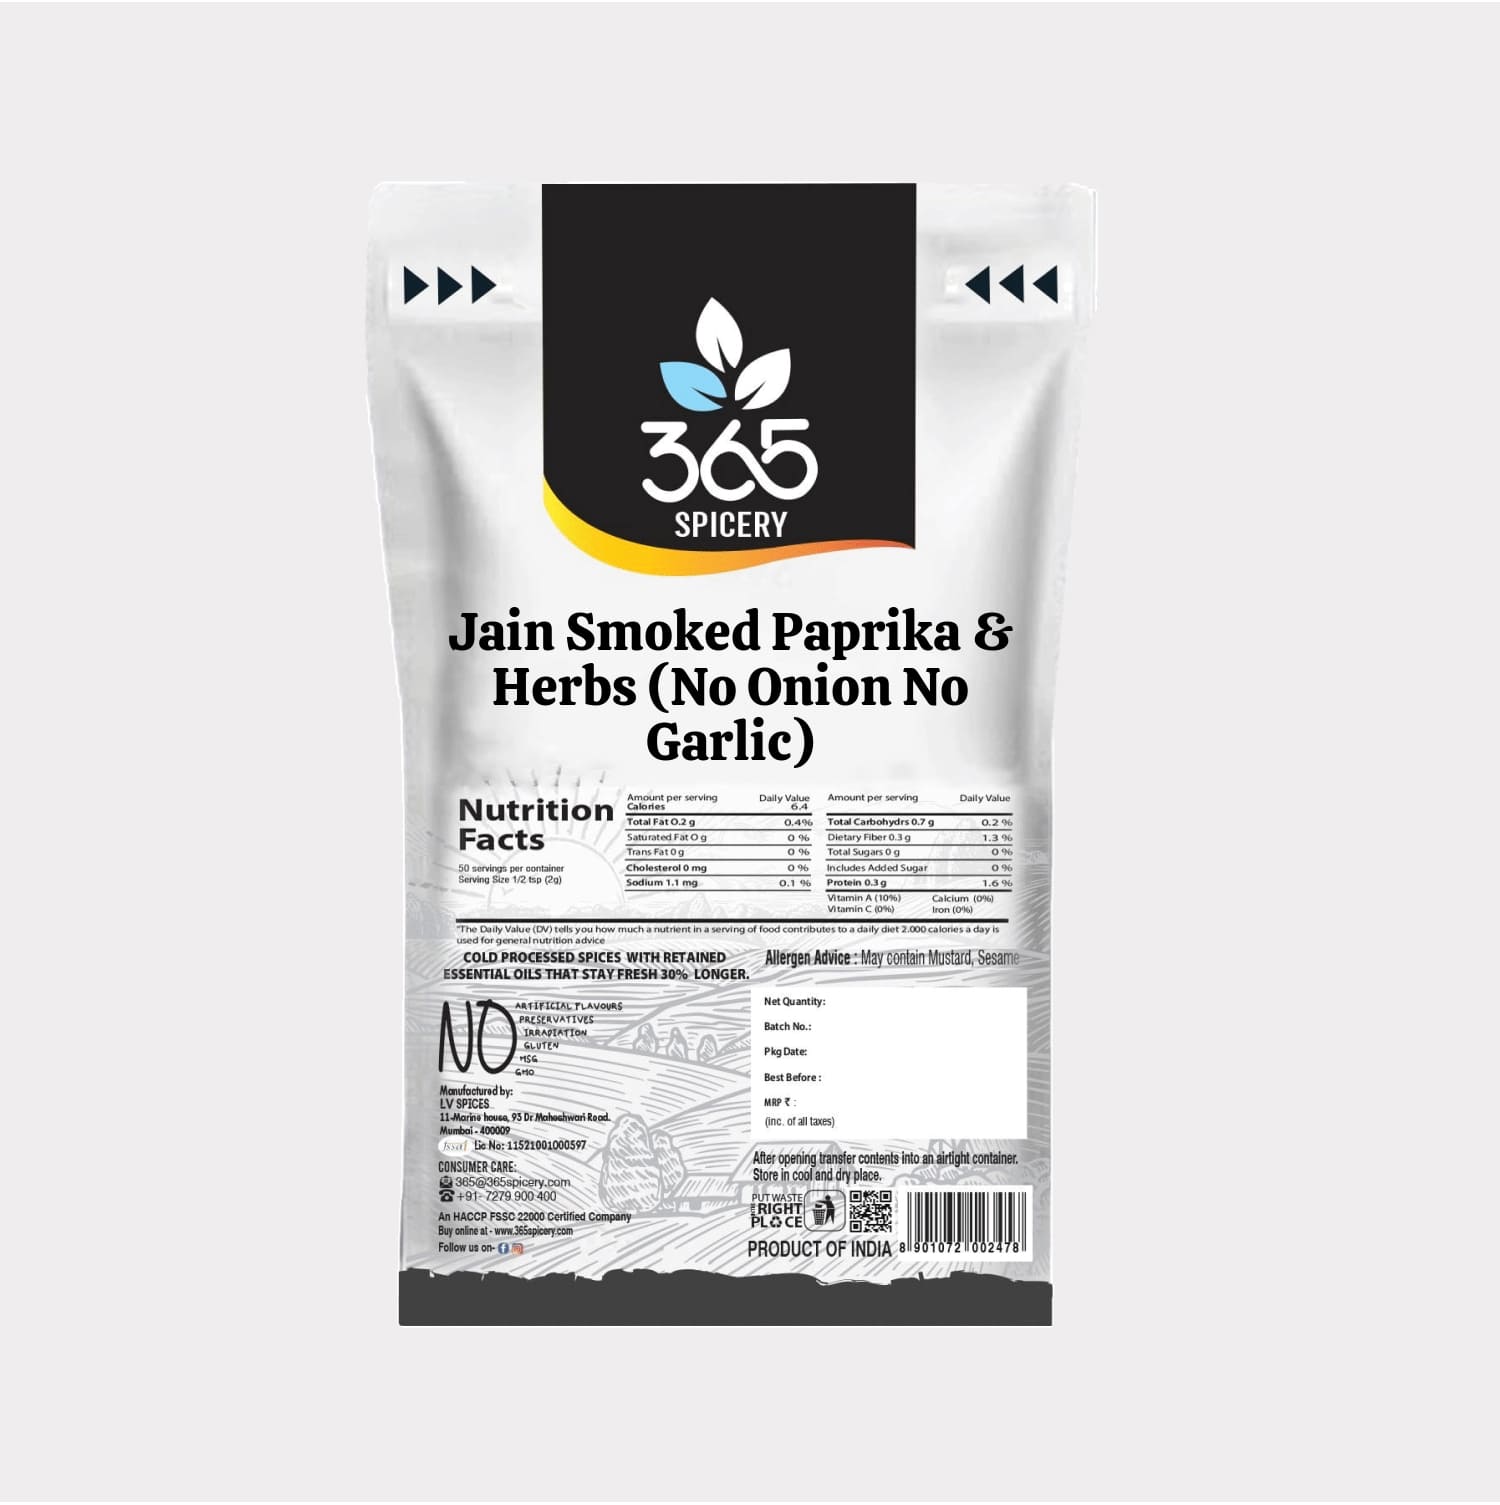 Jain Smoked Paprika & Herbs (No Onion No Garlic)